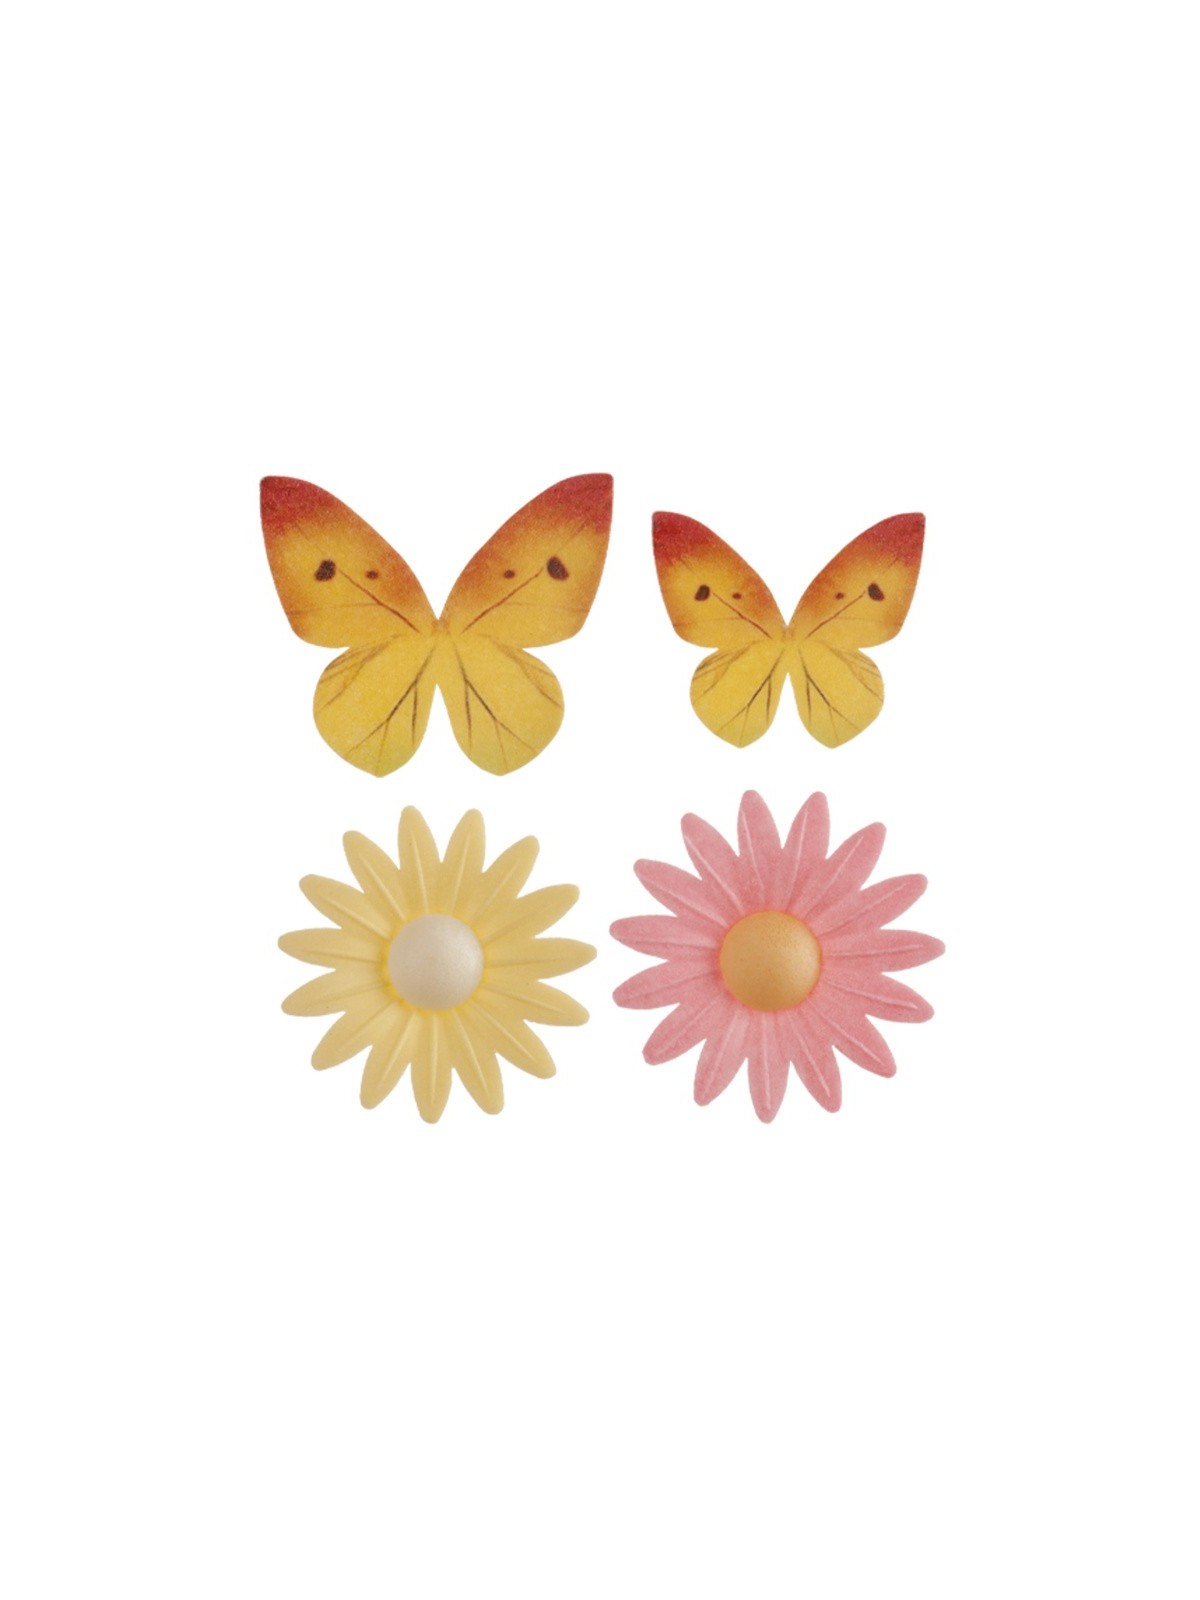 Dekora essbares Papier - 4 Stück Schmetterlinge + 4 Stück Gänseblümchen